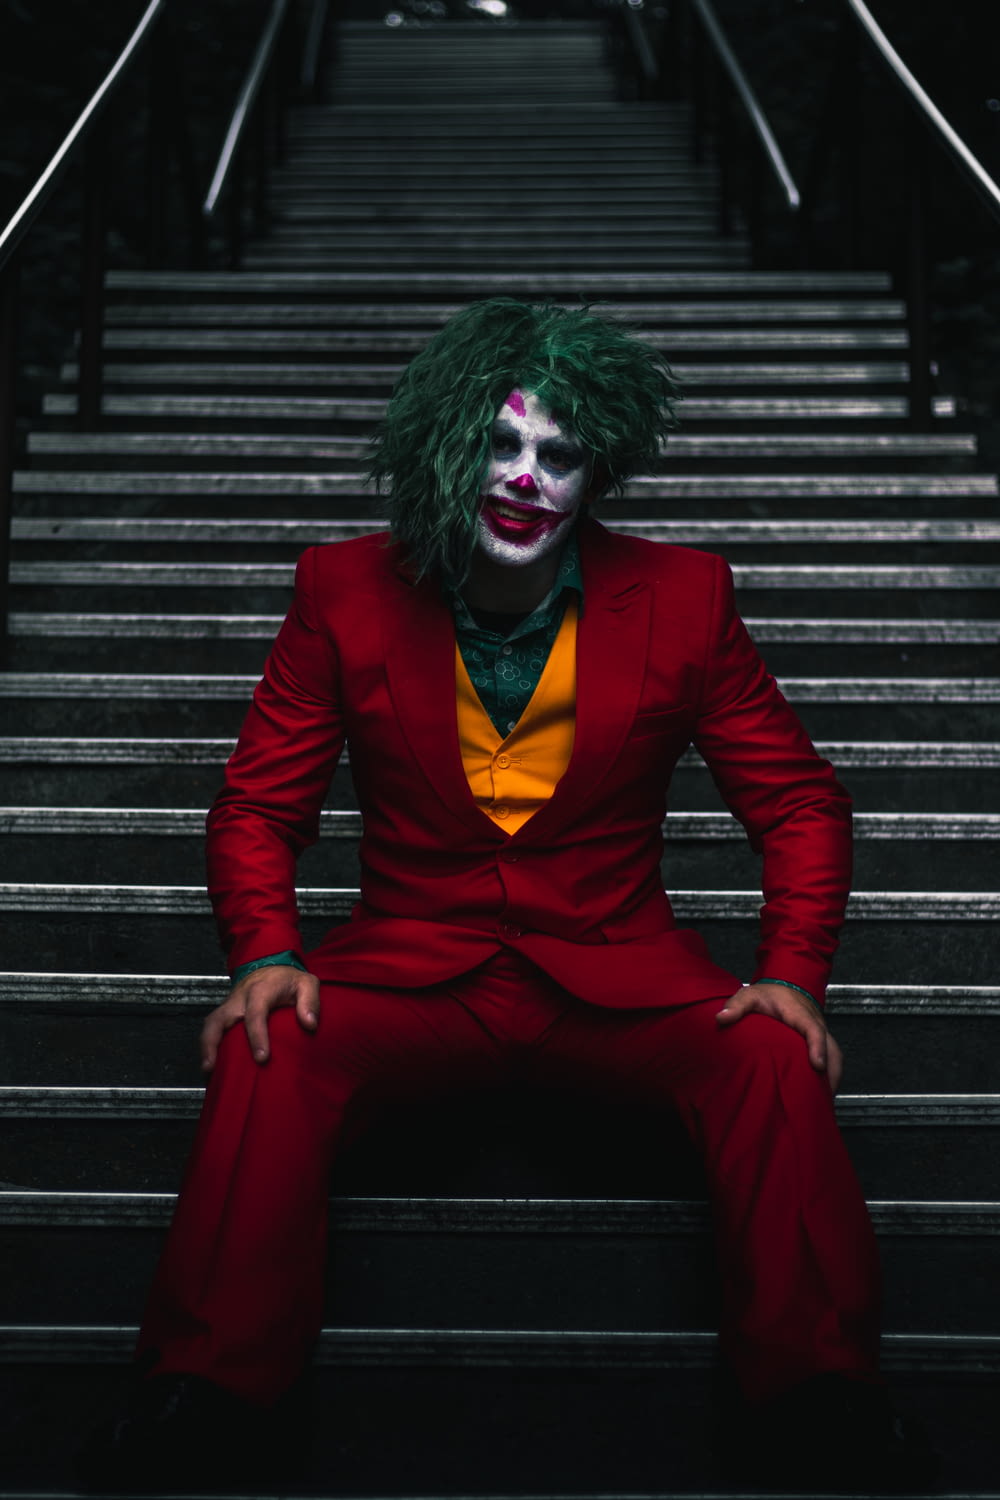 Joker on stairs